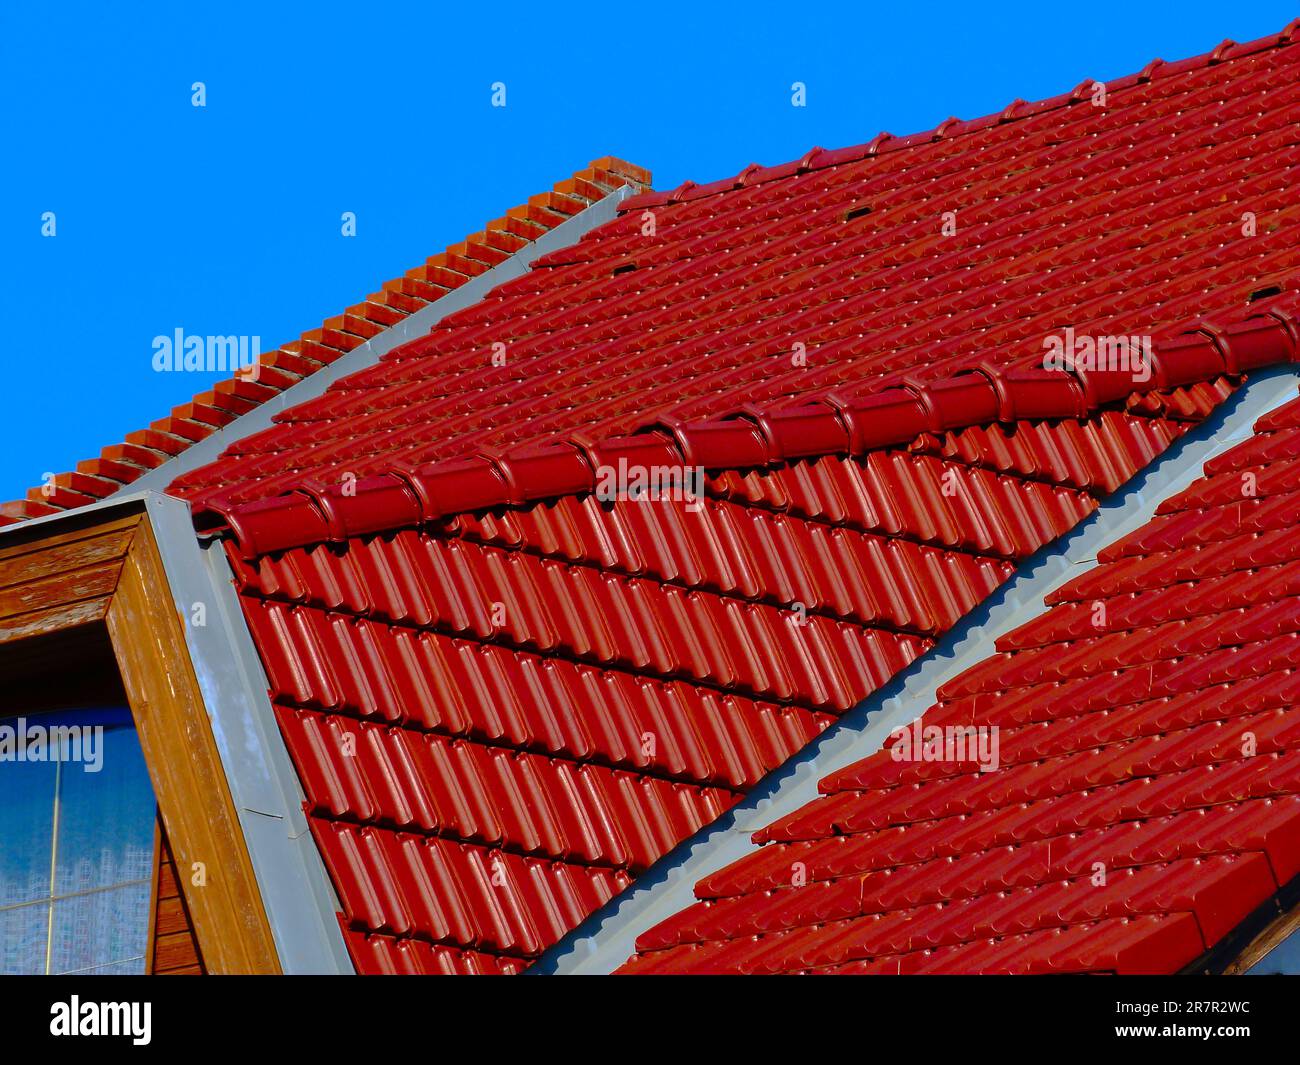 Geneigtes Wohndach. Rote Tonfliesen und Metallblitze. Blauer Himmel. Helles Sonnenlicht. Baugewerbe. Hausbesitzkonzept. Freundliches Haus-Design Stockfoto